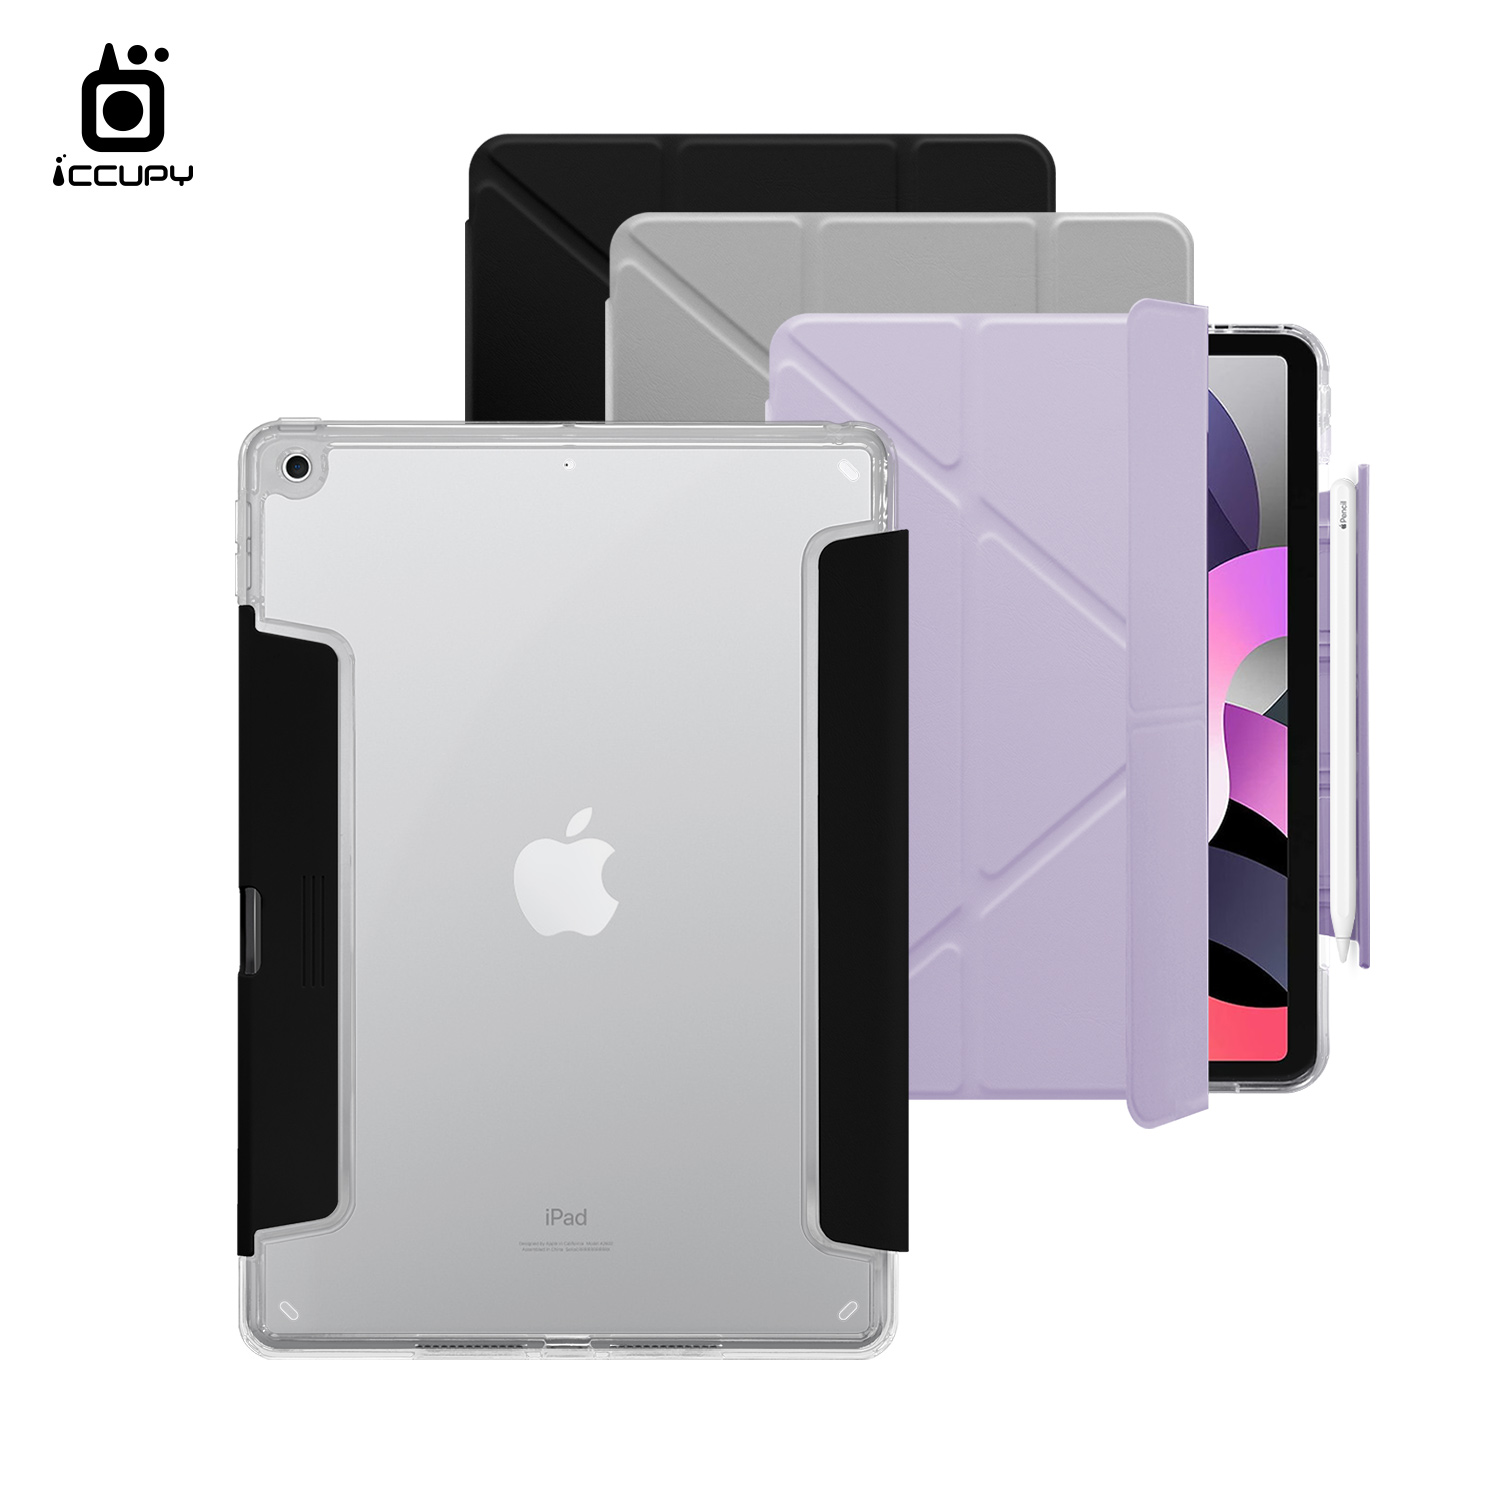 【iCCUPY黑占盾For iPad】黑占盾平板HD系列-隱藏式抽屜筆槽(共三色) For iPad (2021)第9代 10.2吋